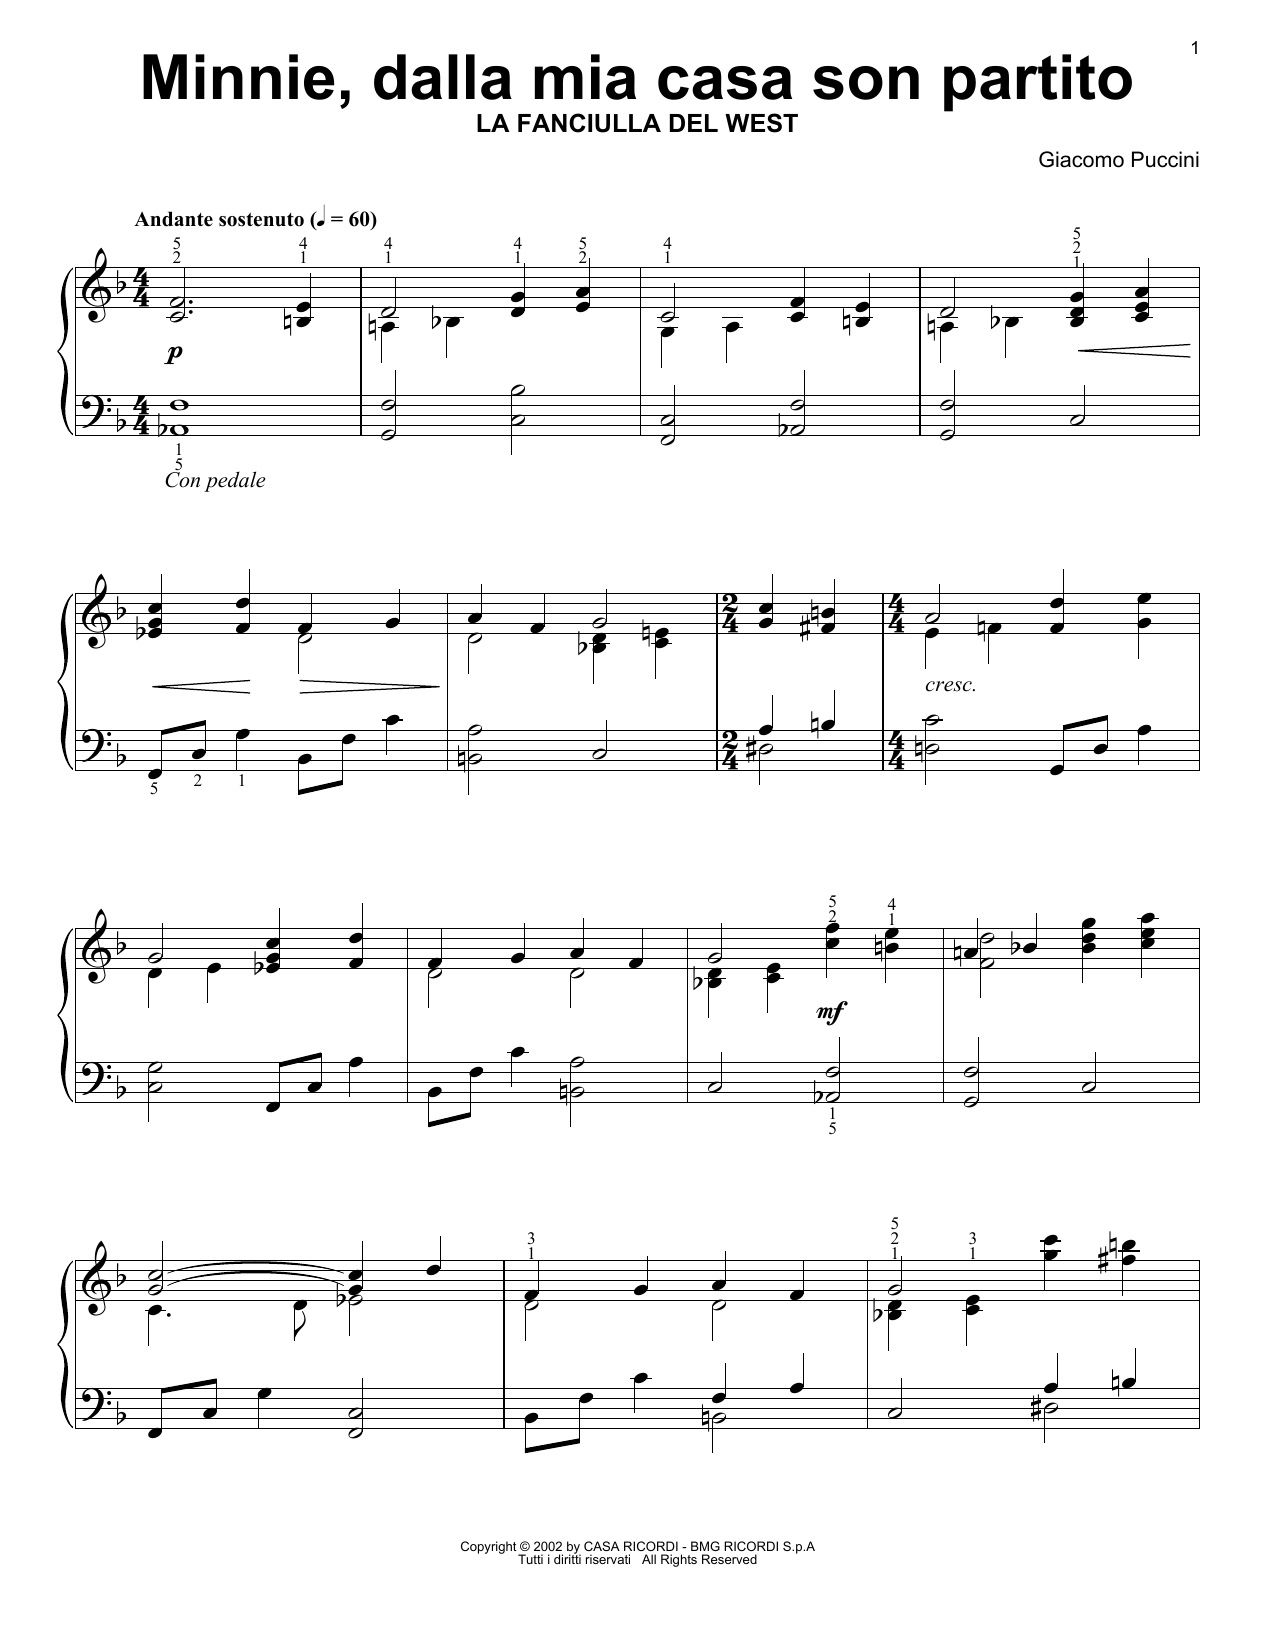 Giacomo Puccini Minnie, Dalla Mia Casa Son Partito Sheet Music Notes & Chords for Piano Solo - Download or Print PDF